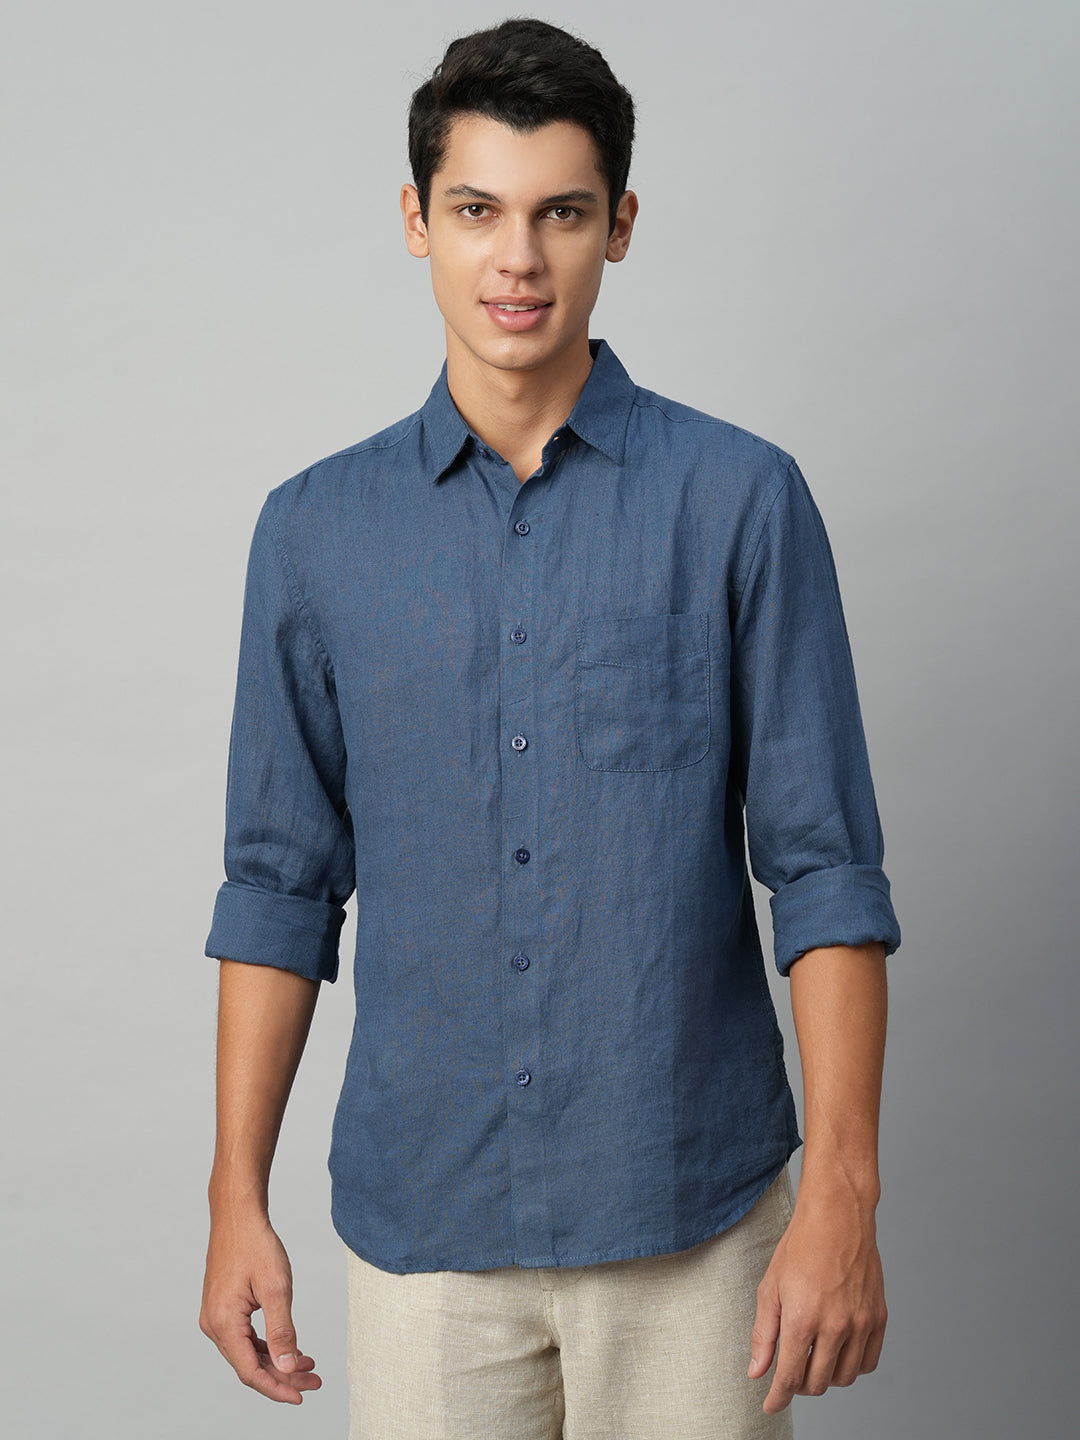 Men's 100% Linen Navy Blue Regular Fit Long Sleeve Shirt